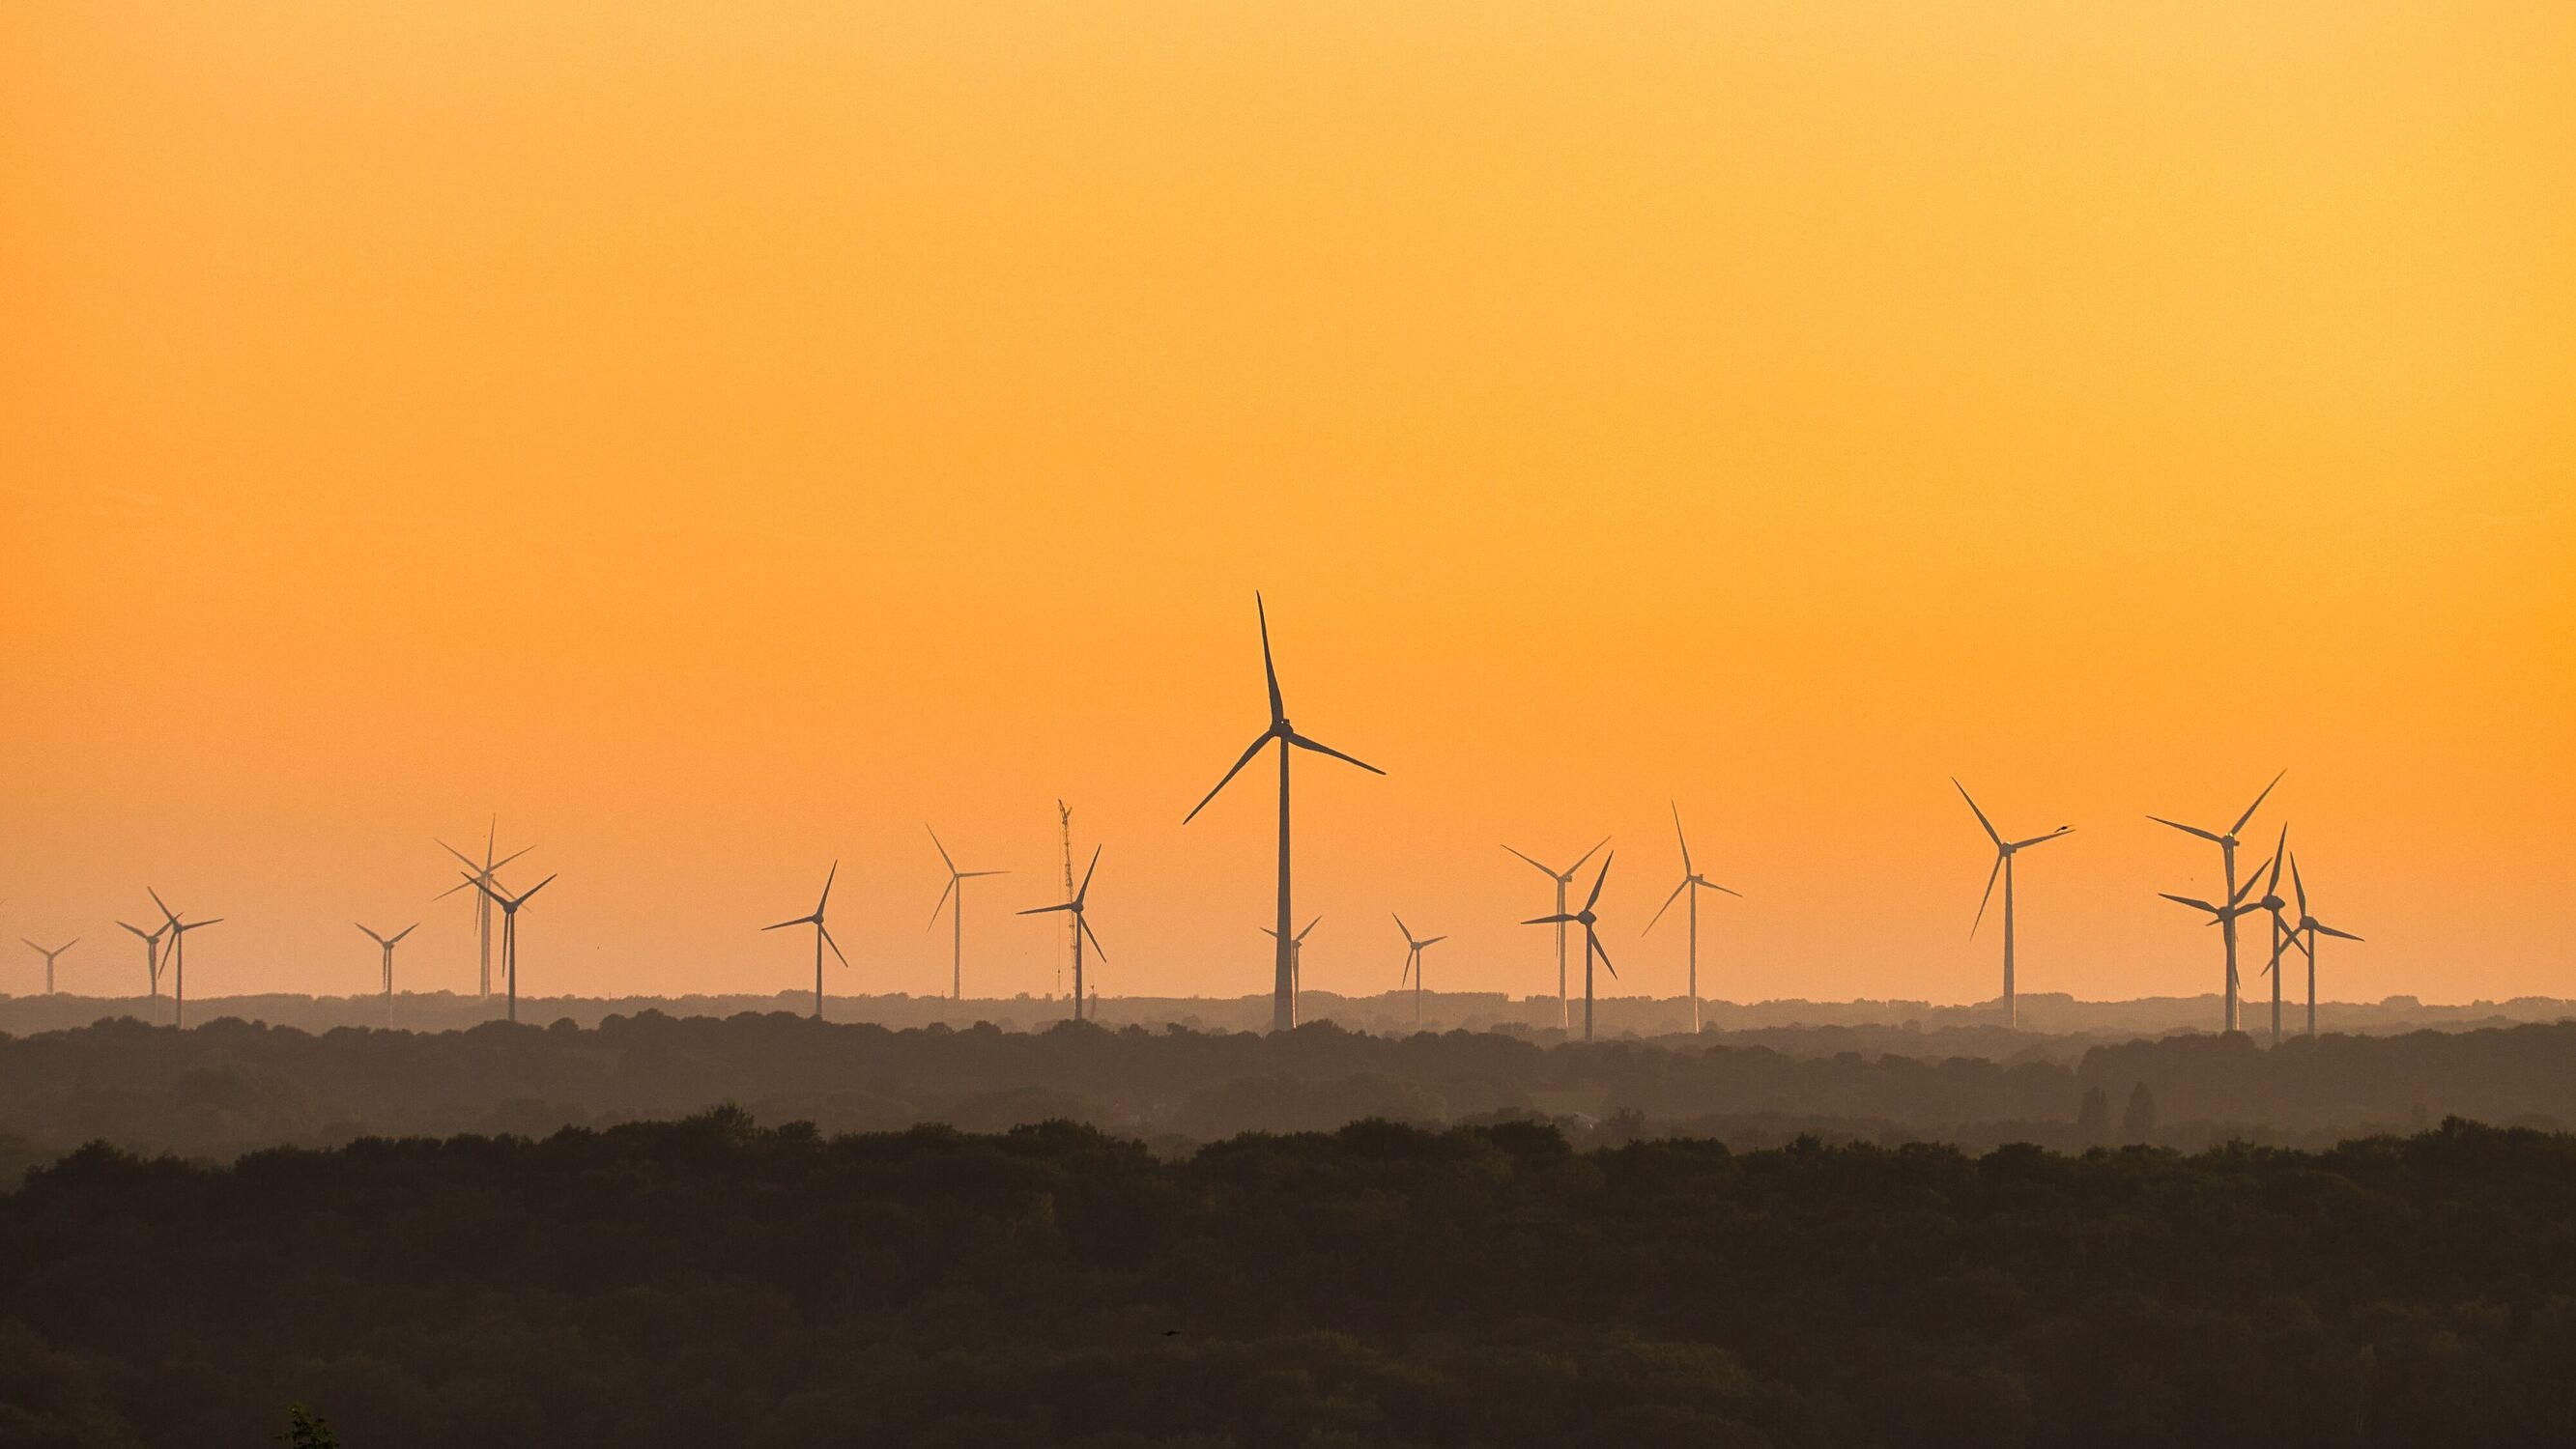 Bild mit Sonnenuntergang, gelber Hintergrund, ökologie, Windräder, Strom, Ruhrgebiet, Windkraft, Windkrafträder